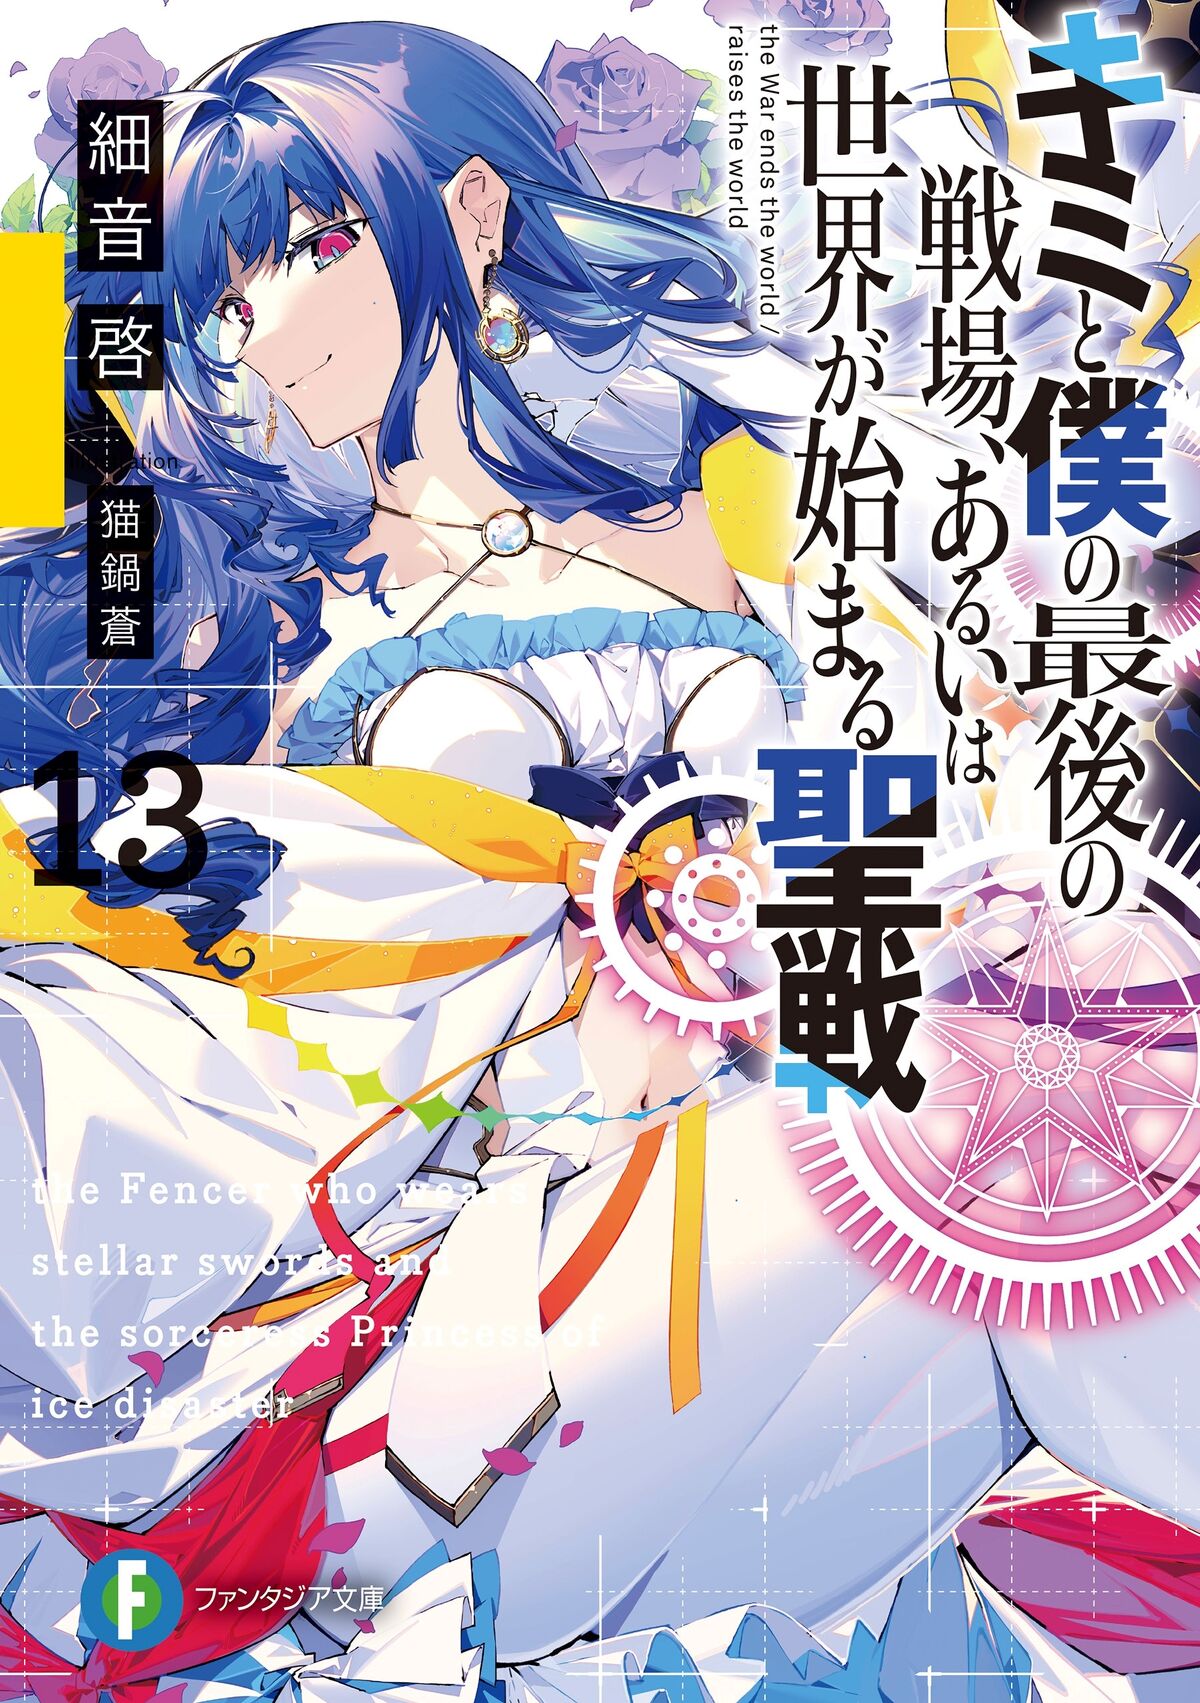 Light Novel Volume 4, KimiSen Wiki